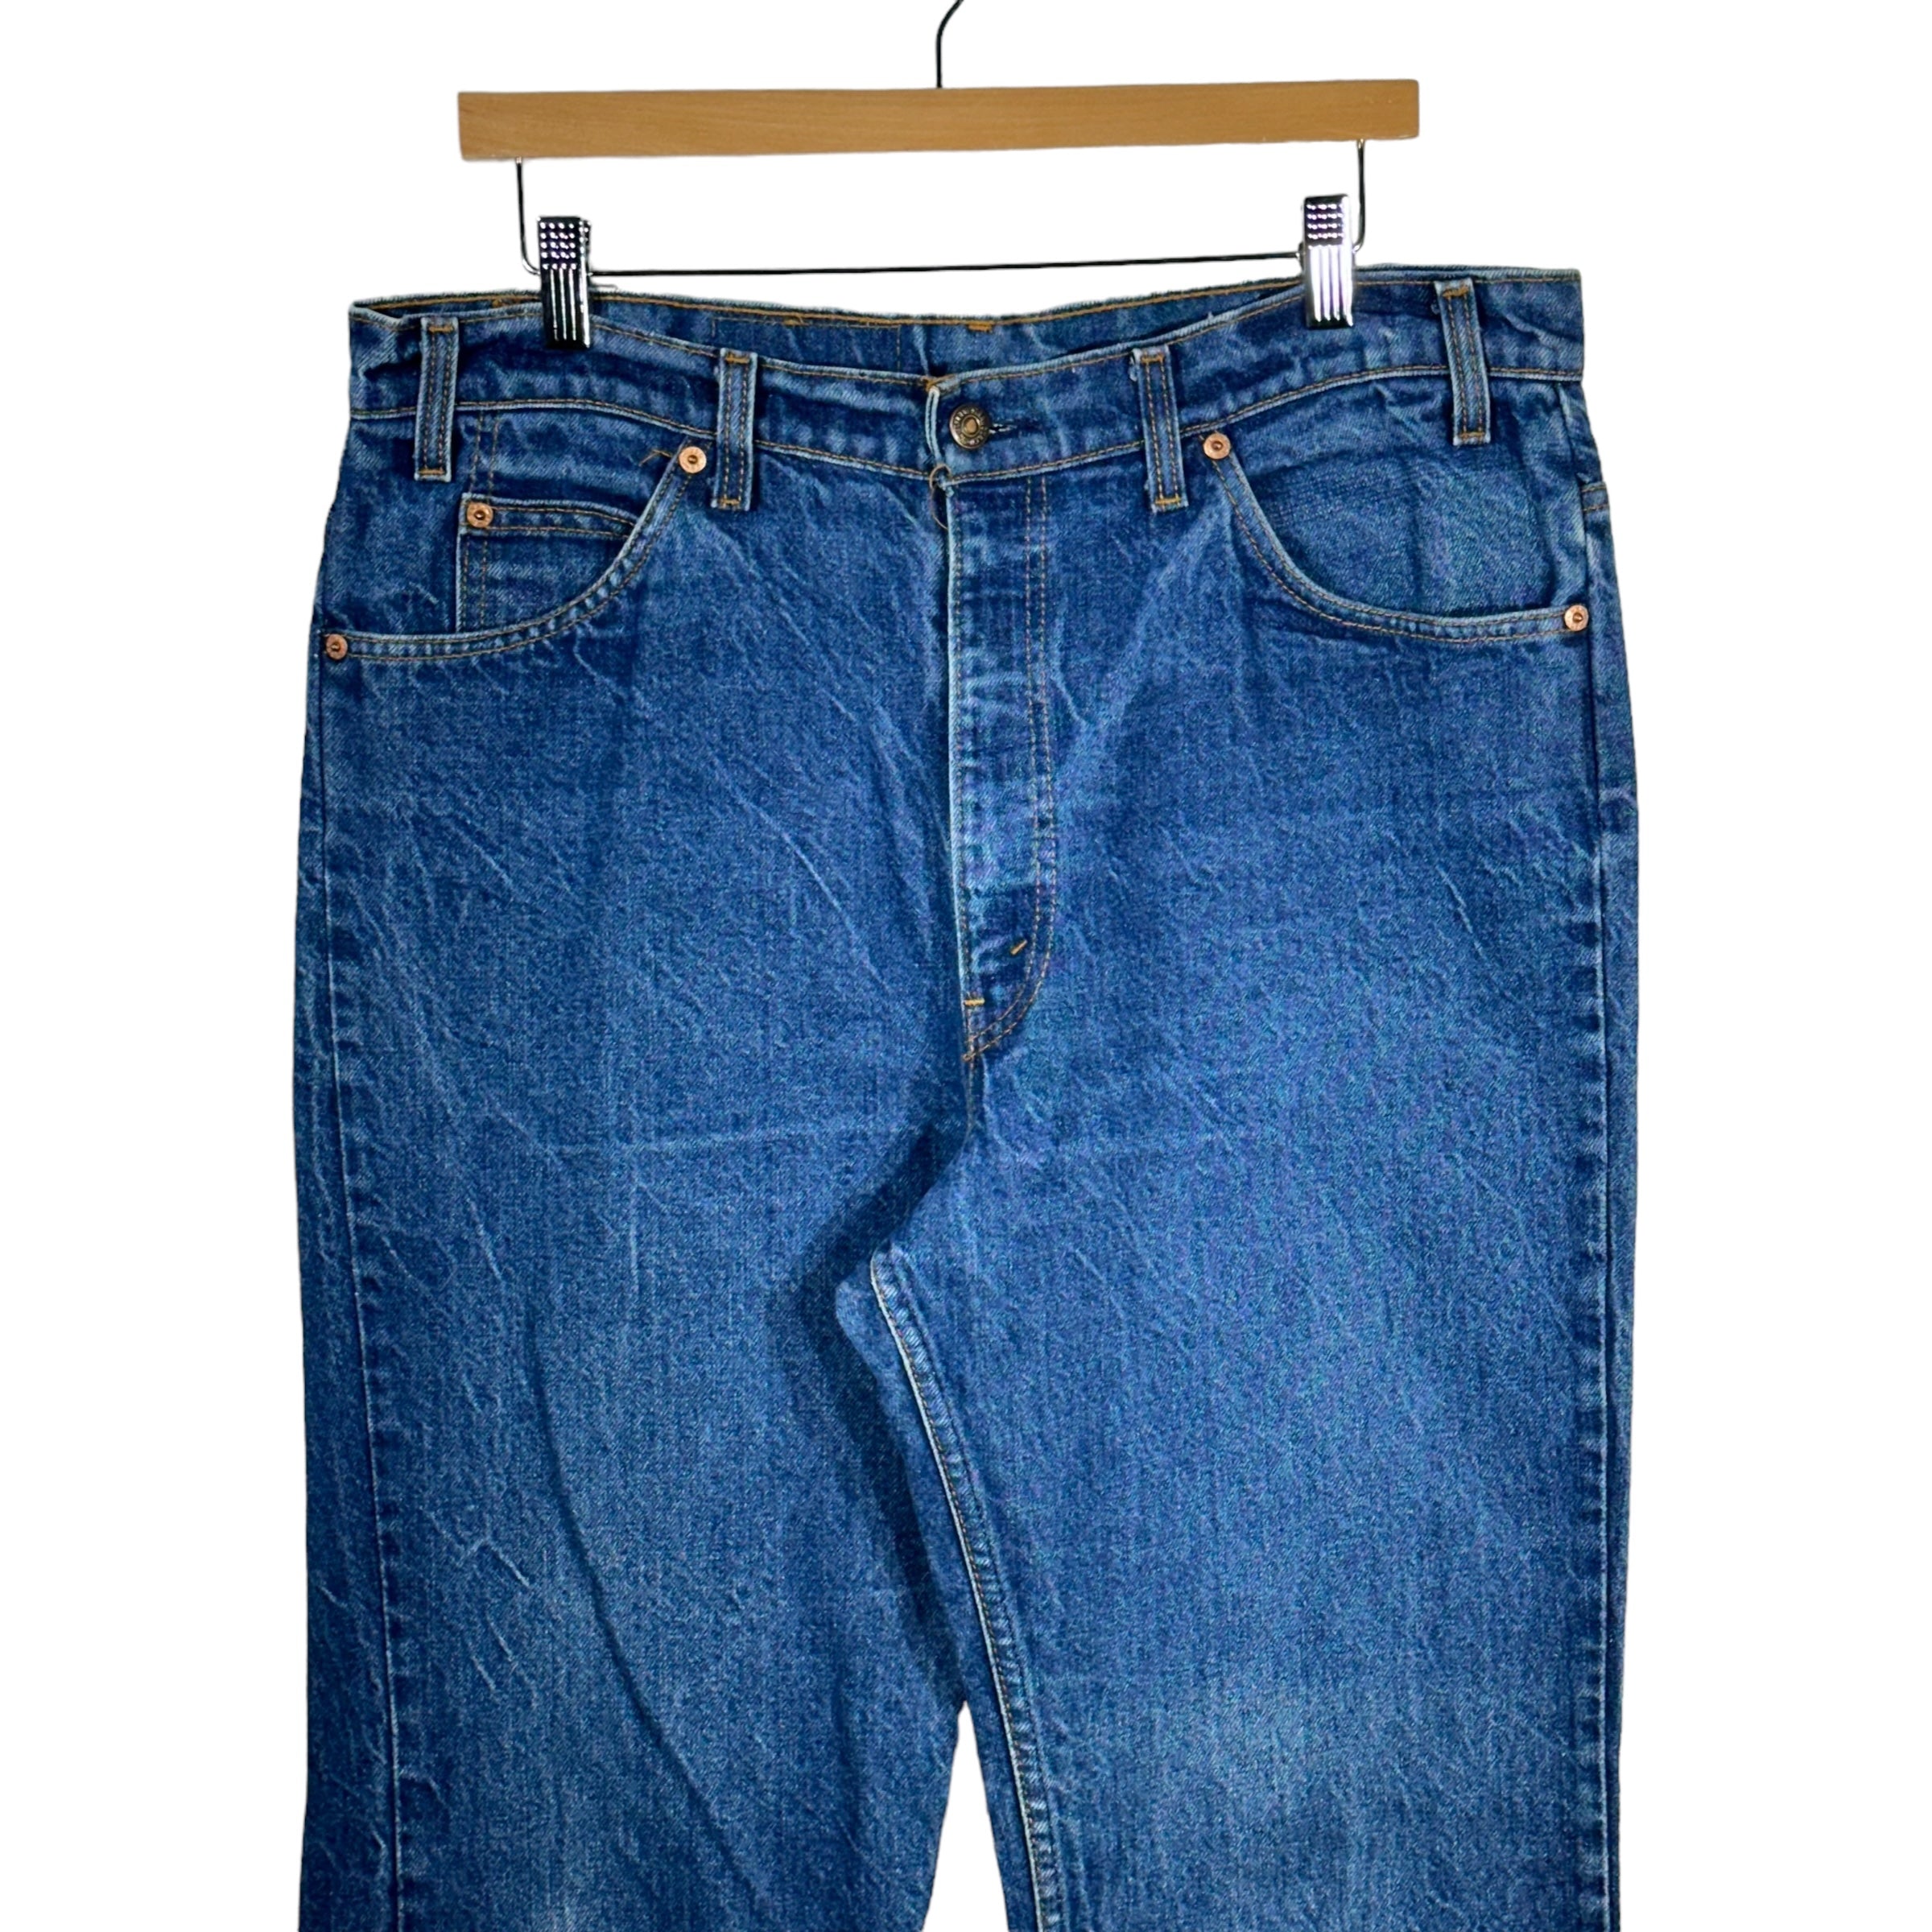 Vintage Levi's Orange Tab Jeans 90s